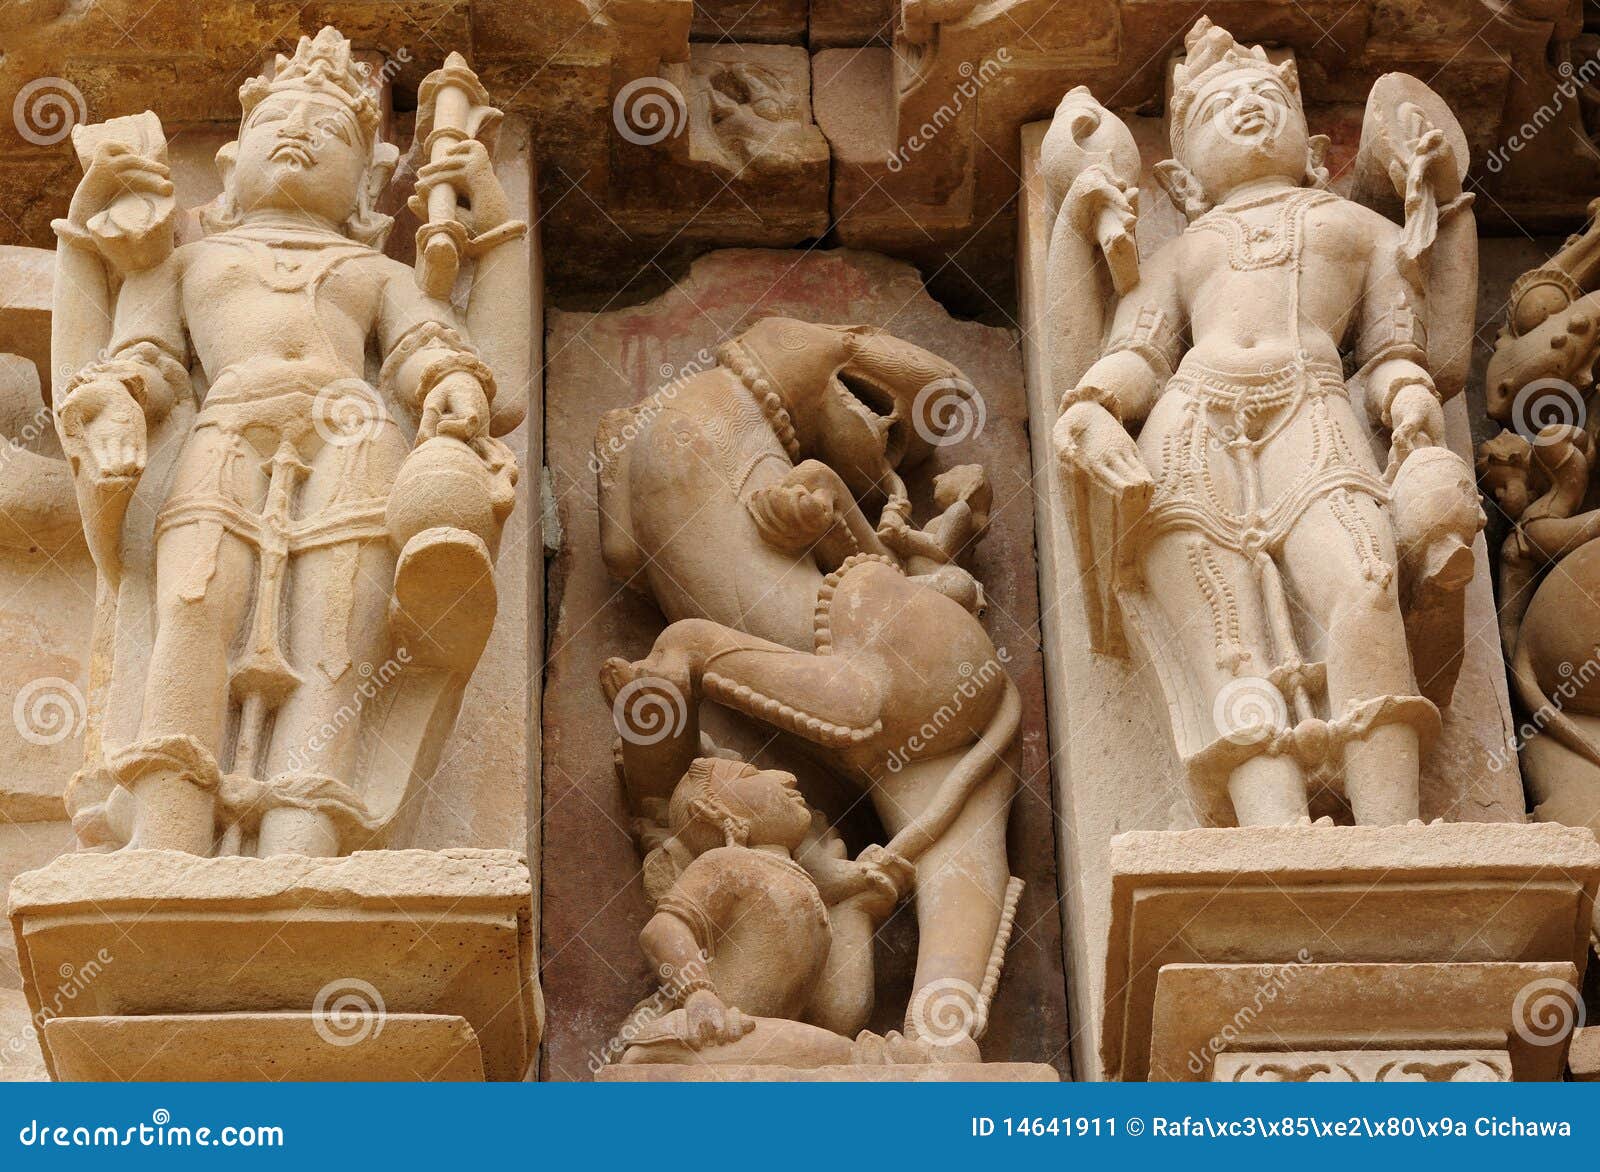 india sculpture temple Erotic